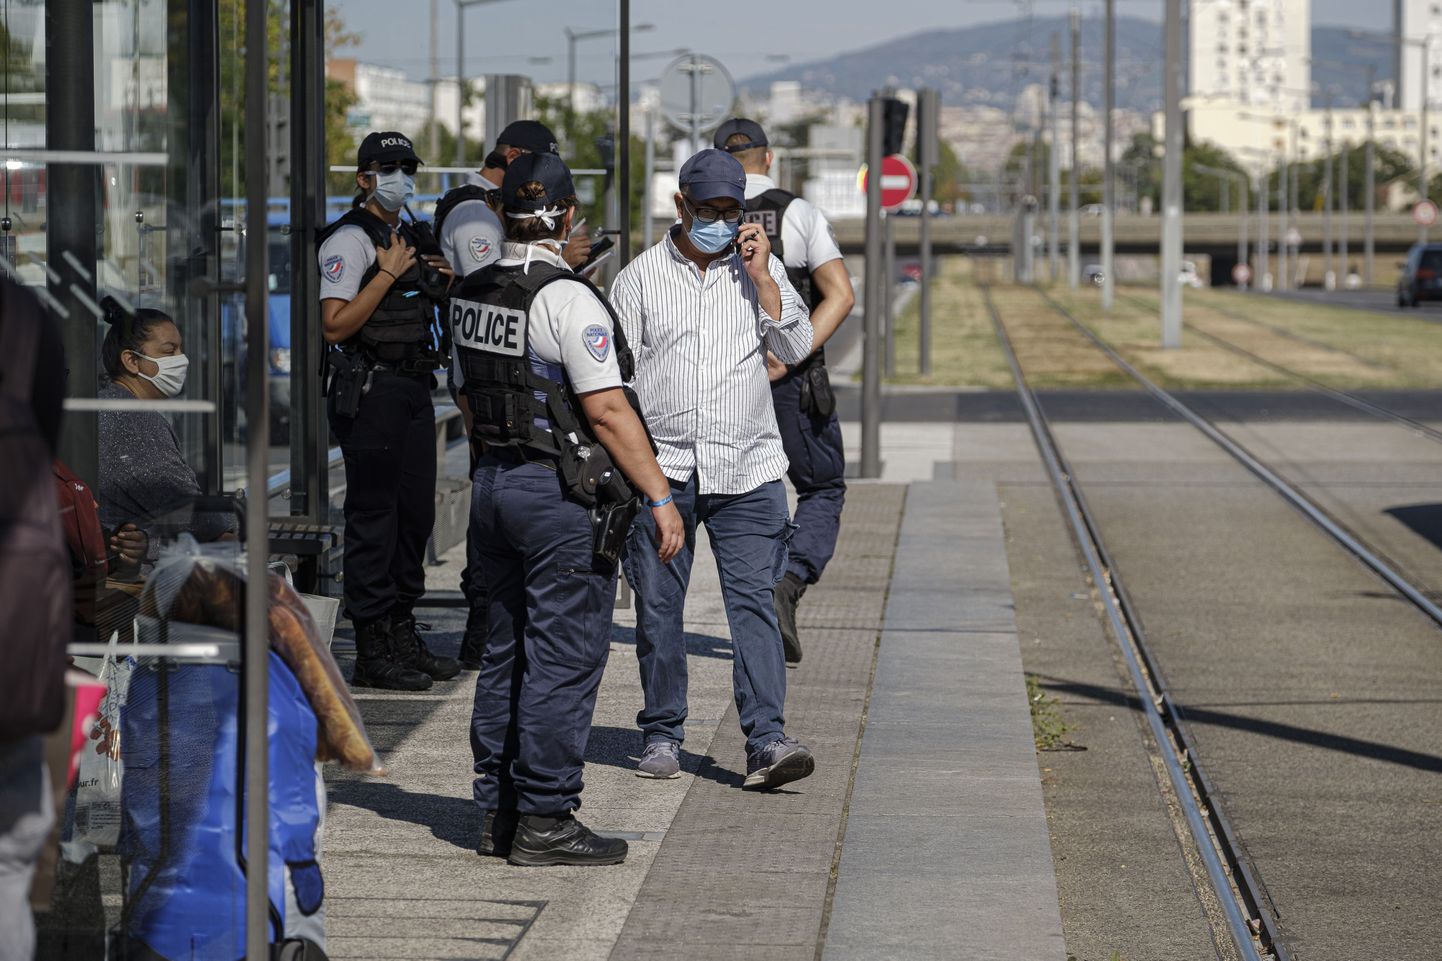 Prantsusmaal on alates 11. maist kohustus kanda ühistranspordis maske, samuti 50 meetri raadiuses ühistranspordi peatustes. Politsei kontrollib selle nõude täitmist.